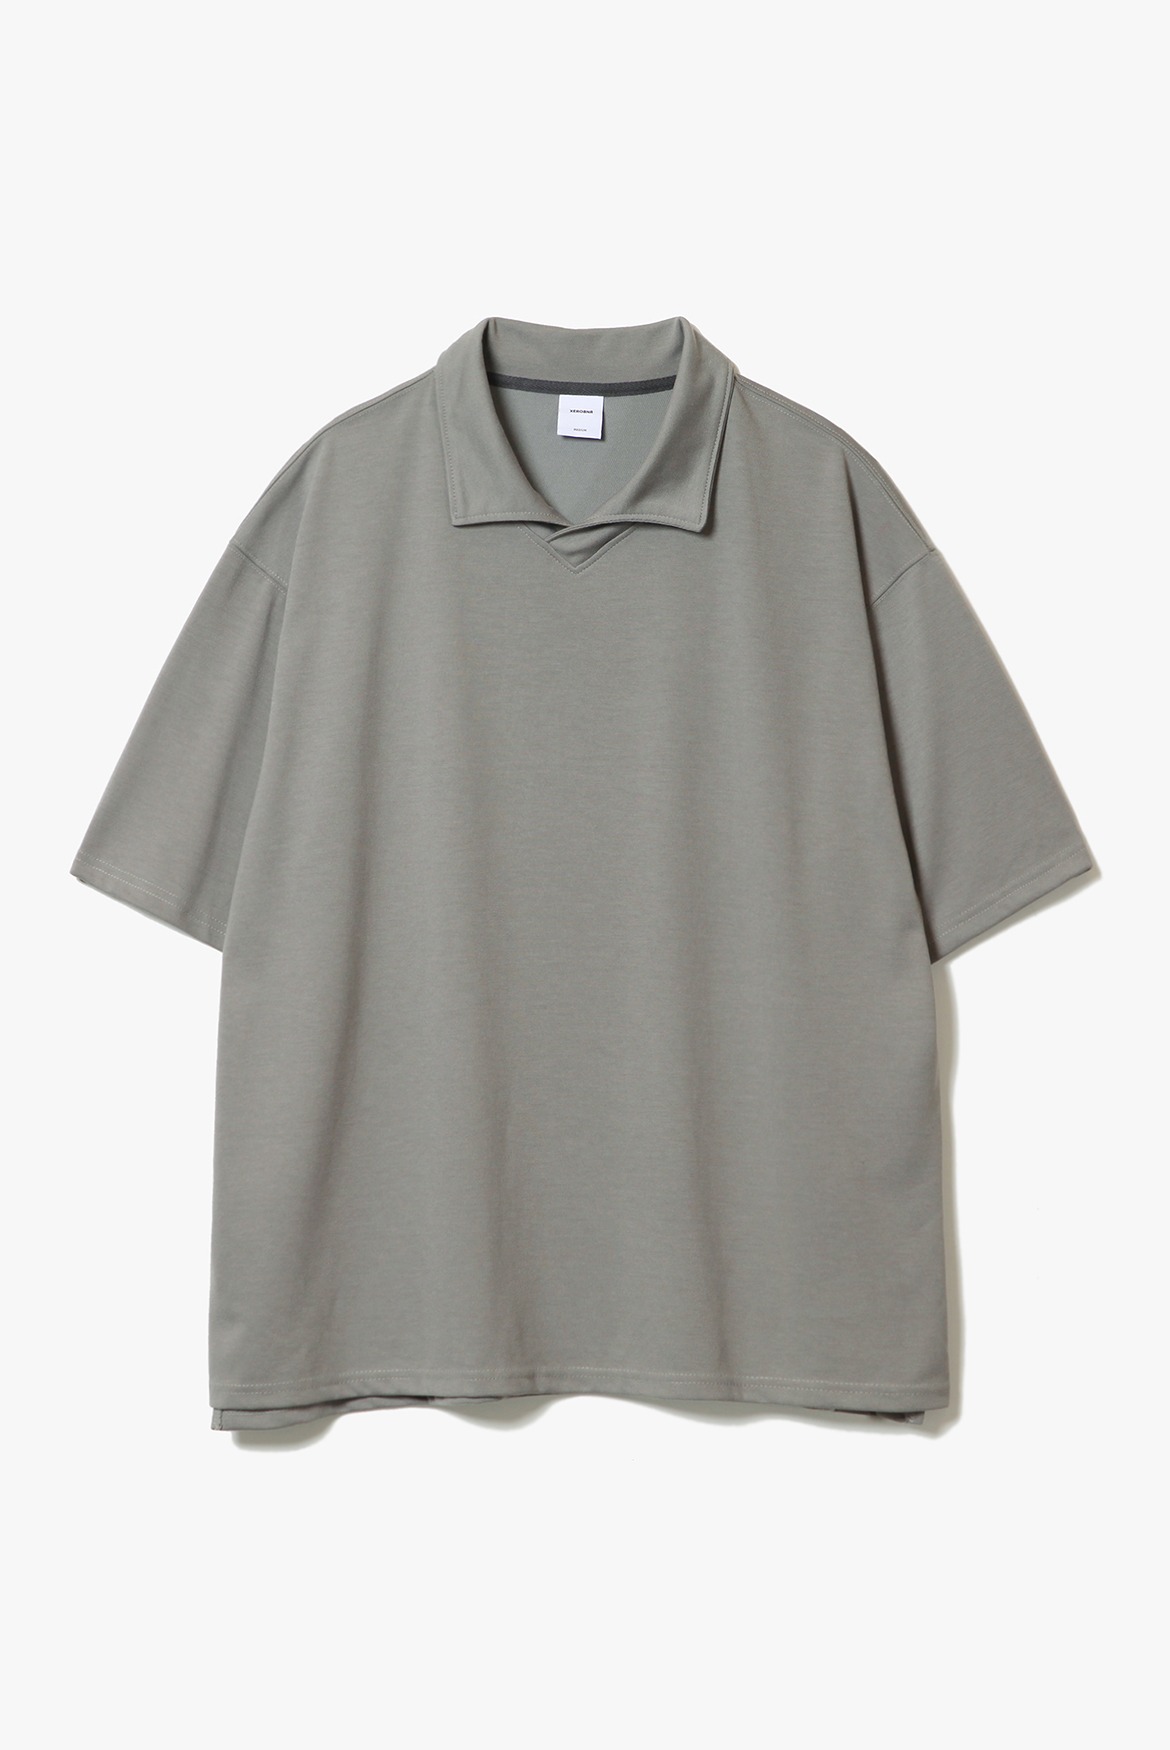 V-Neck Stand Collar T-Shirts [Boston Khaki]